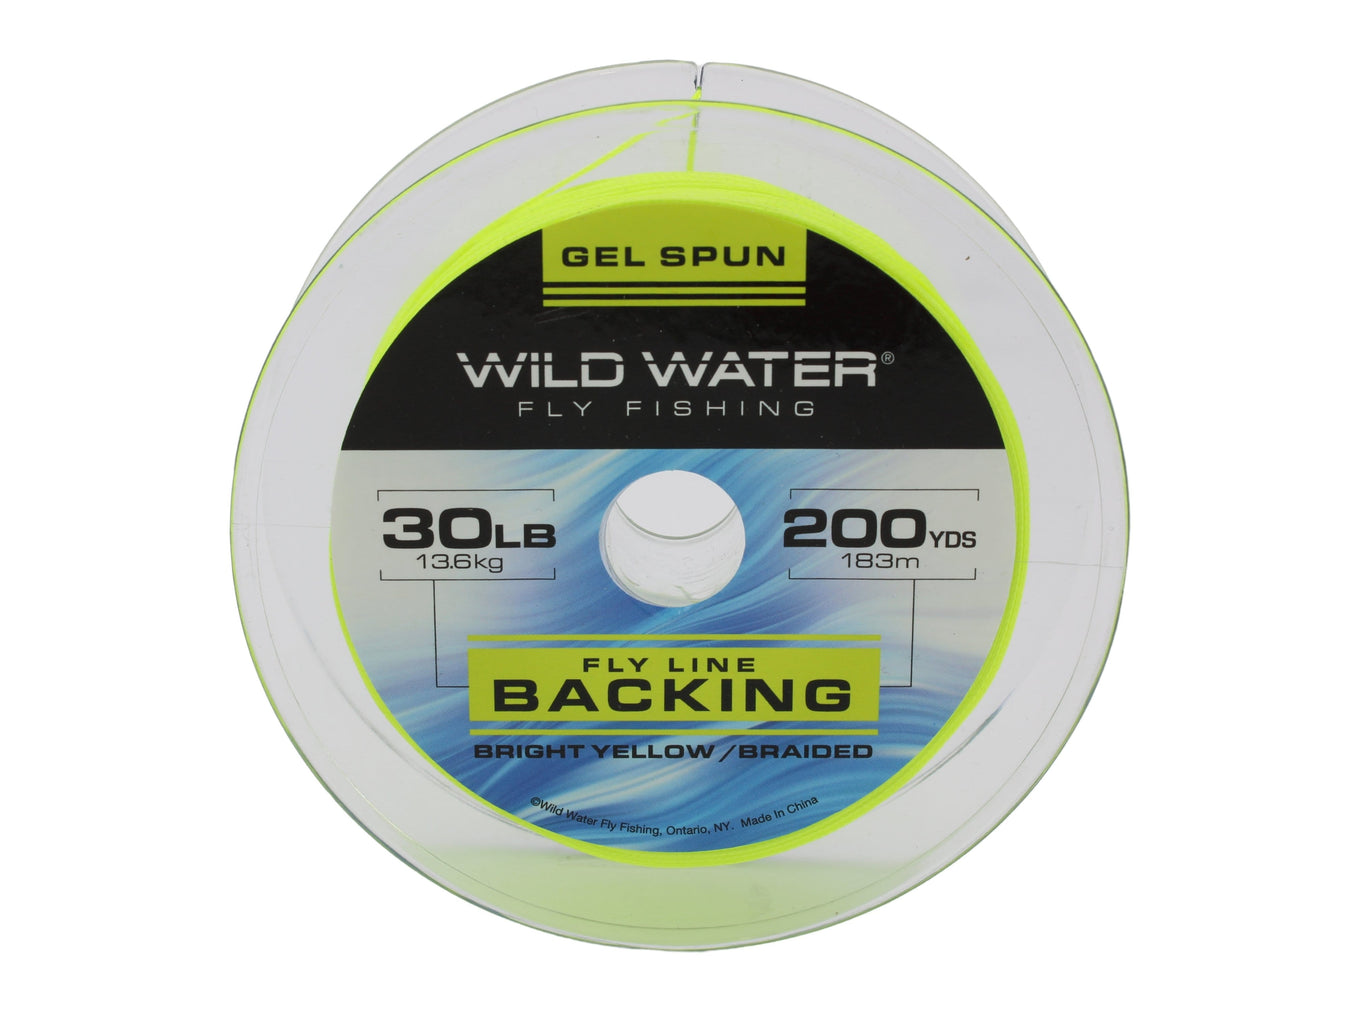 Wild Water Fly Fishing 30# Gel Spun Backing